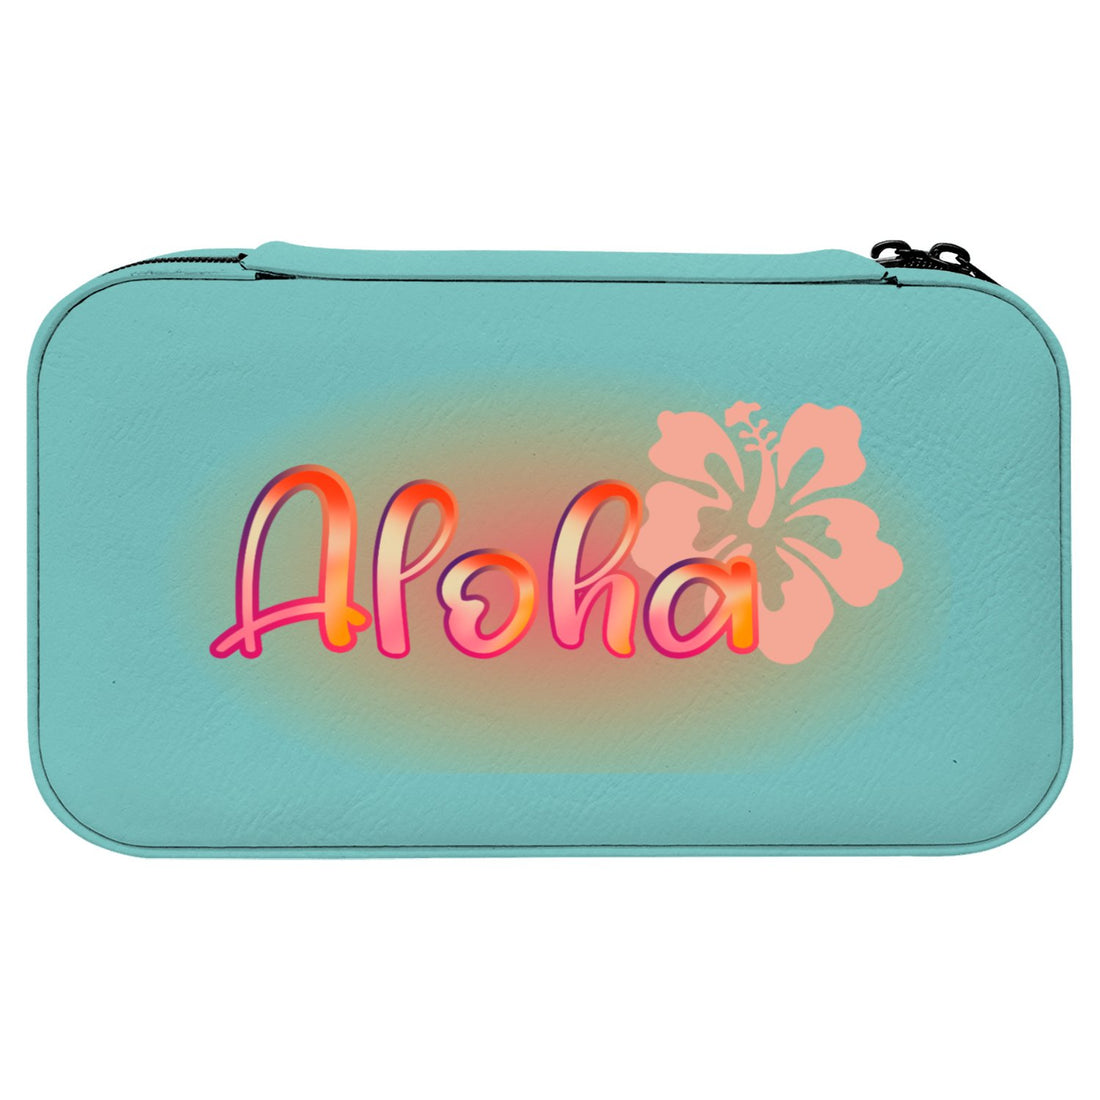 Aloha Jewelry Organizer - Positively Sassy - Aloha Jewelry Organizer